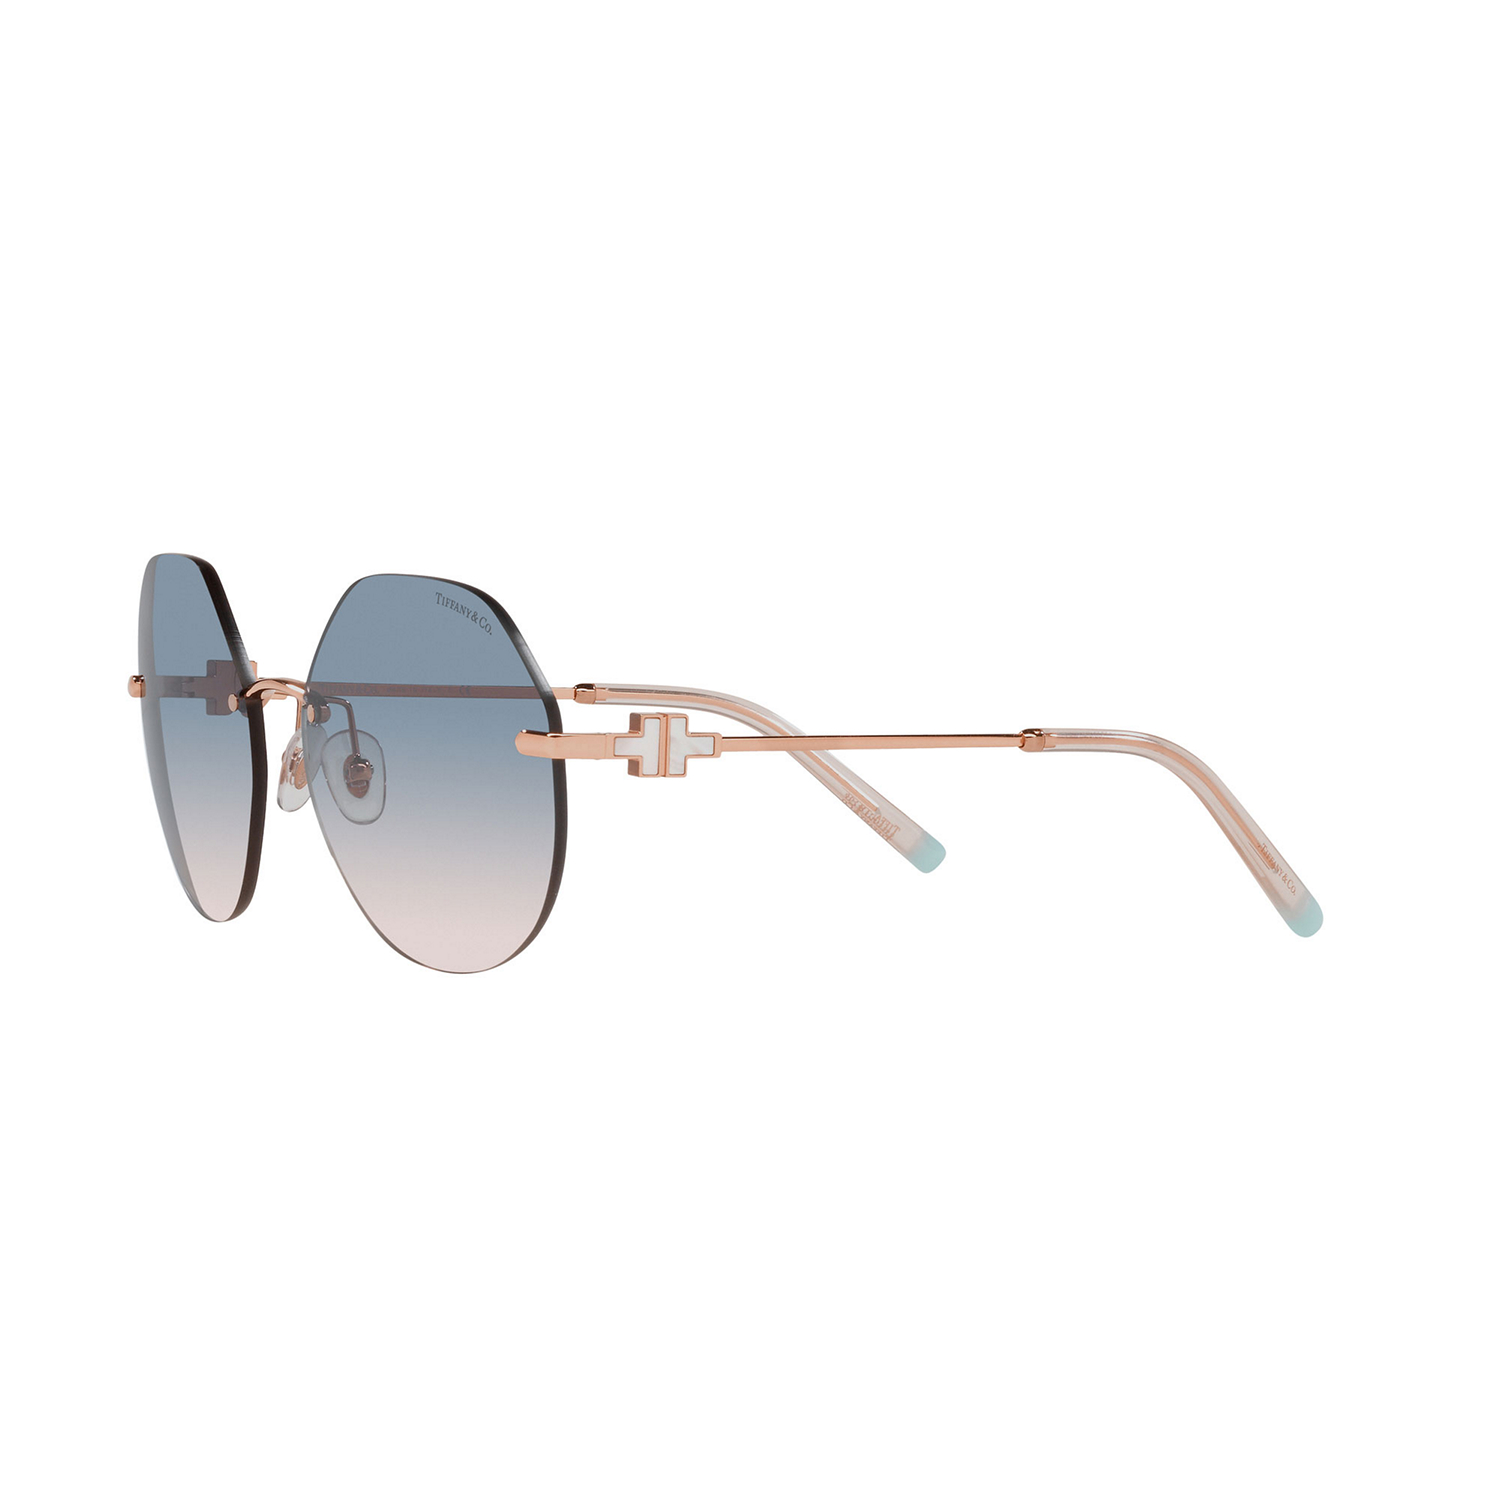 0TF3077 Irregular Sunglasses